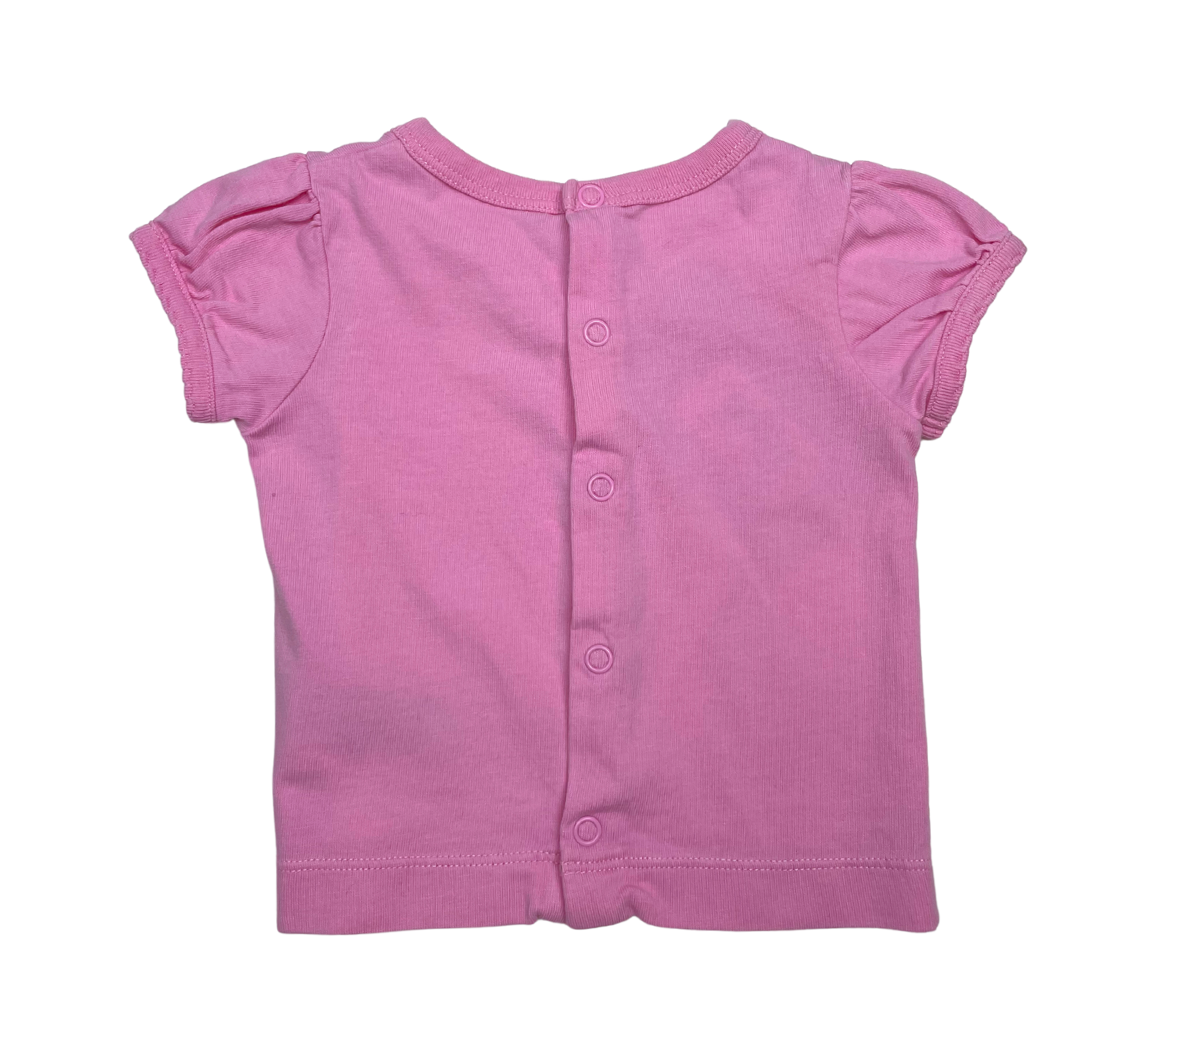 PETIT BATEAU - T-shirt rose - 6 mois